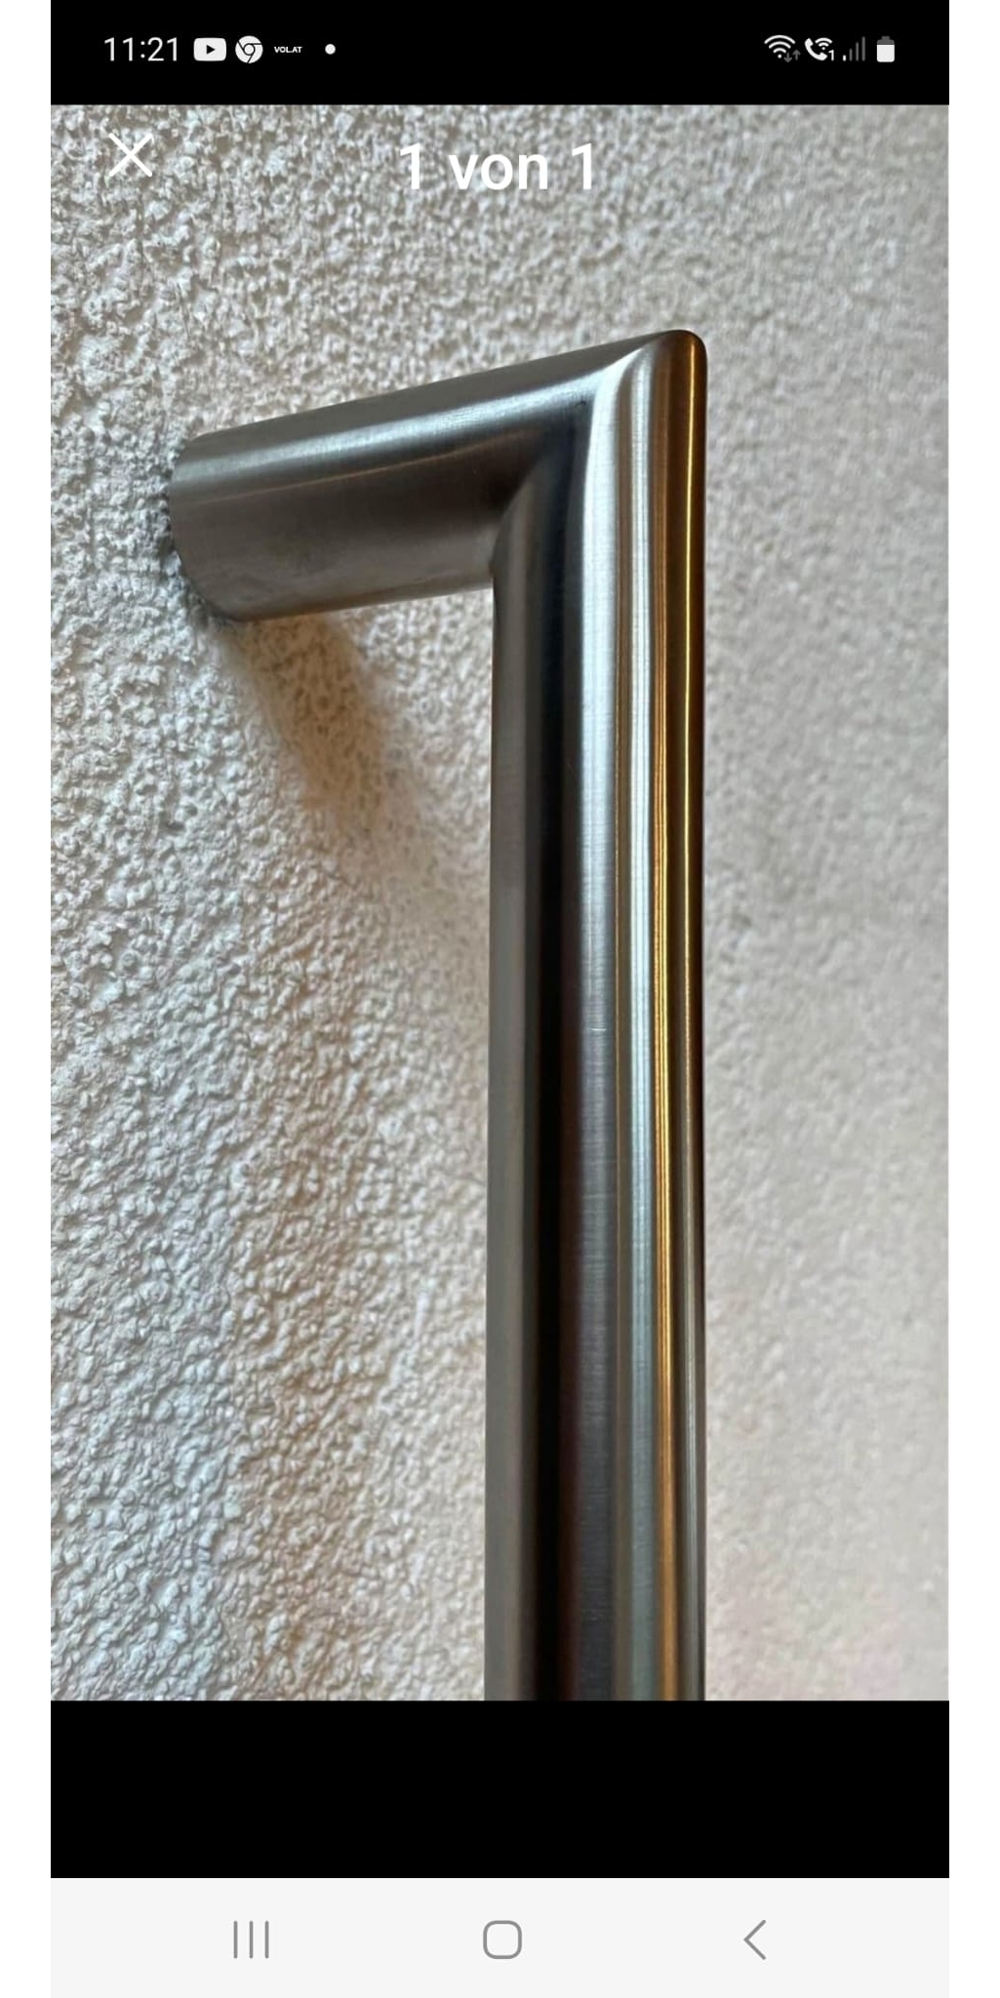 Gehrungs-Stoßgriff für Haustüre oder Glastüren